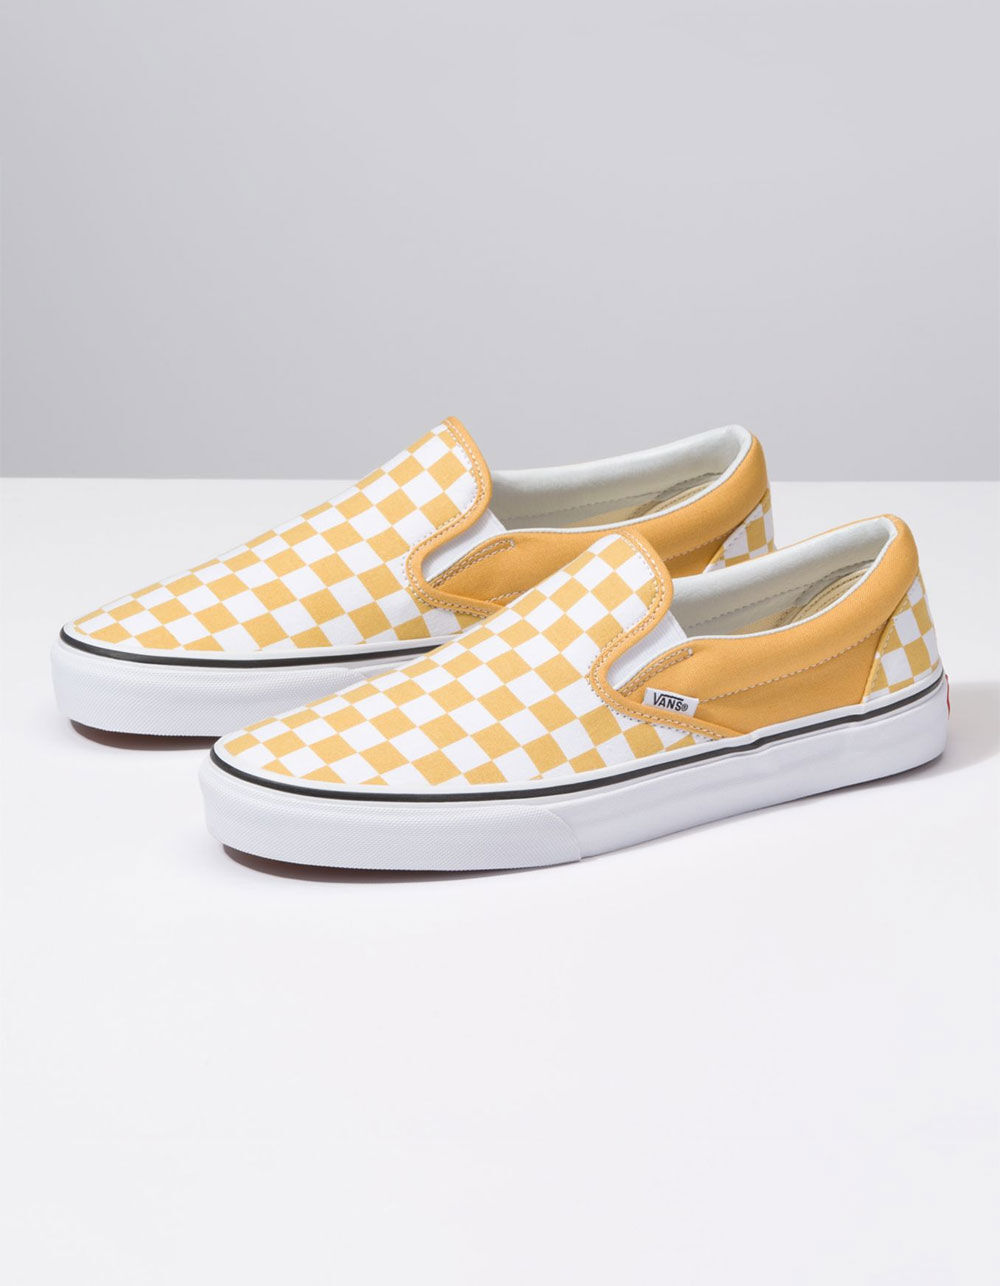 Vans Checkered Slip-on Cheese Yellow & White (Size: Men's: 8.5/ Women's: 10)